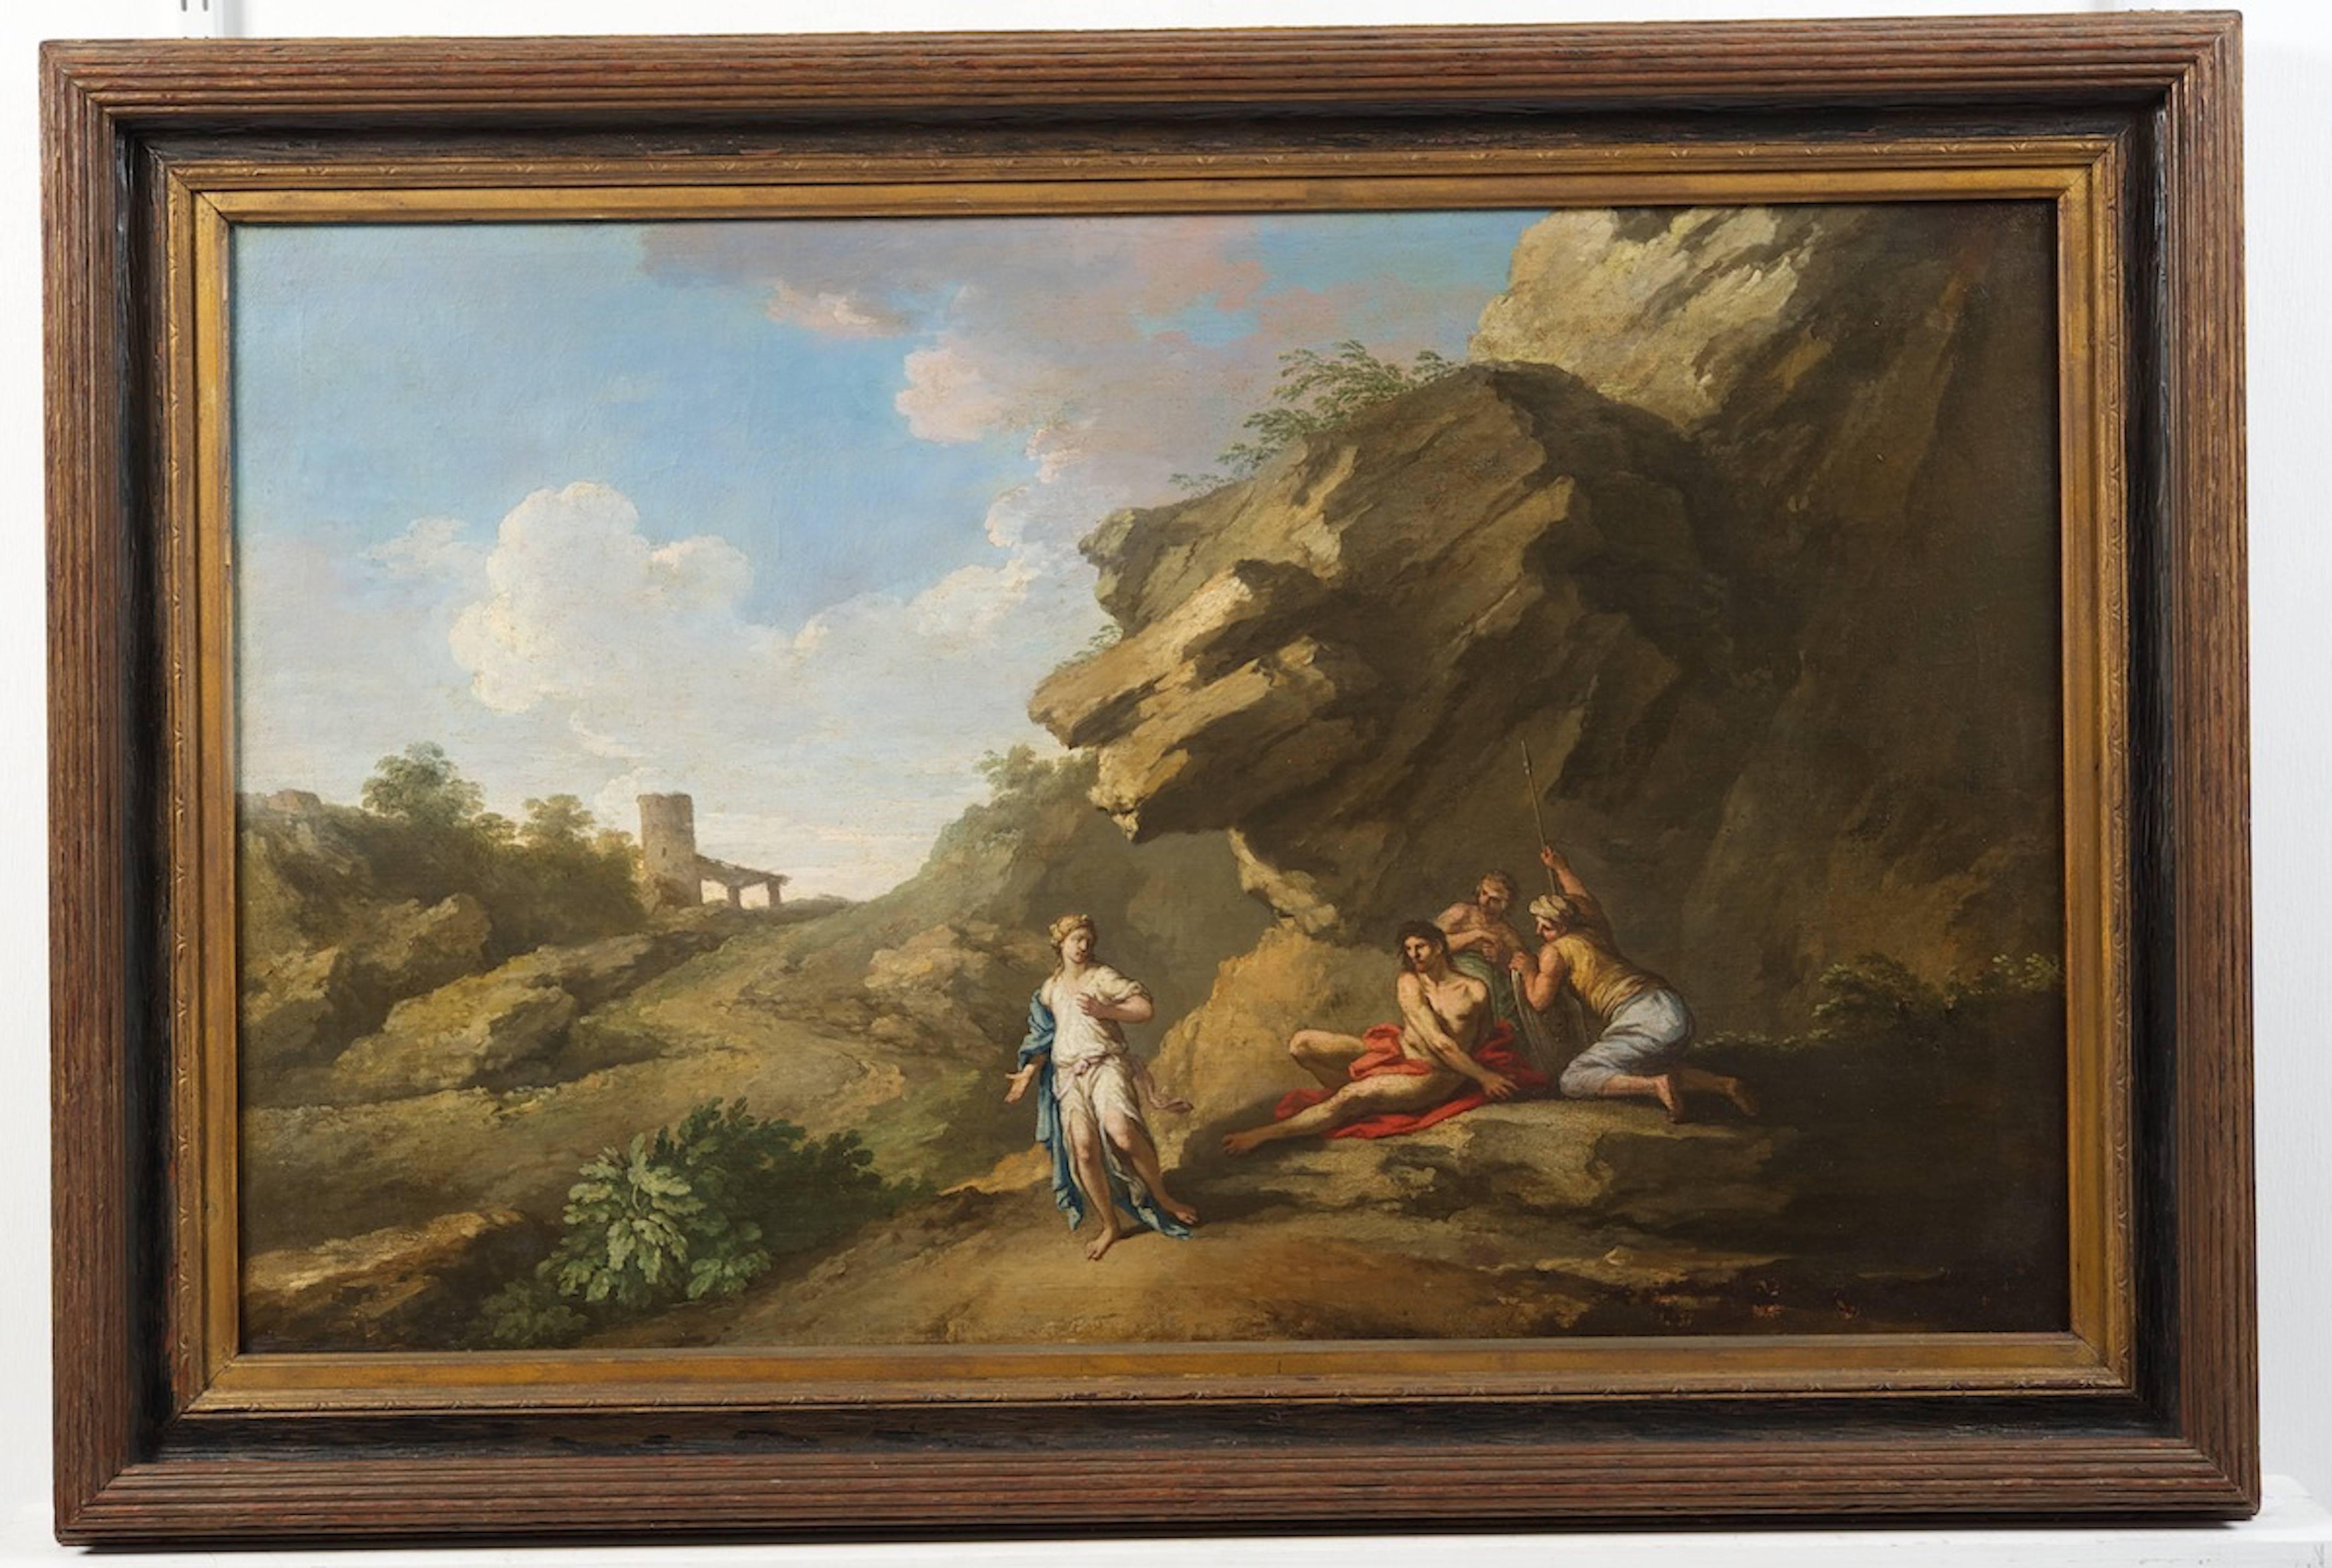 Römische Landschaft in Öl auf Leinwand mit Figuren von Andrea Locatelli (Rom 1693-1741)

Locatelli gehörte zu der Gruppe von Landschaftsmalern in Rom, die von den englischen 